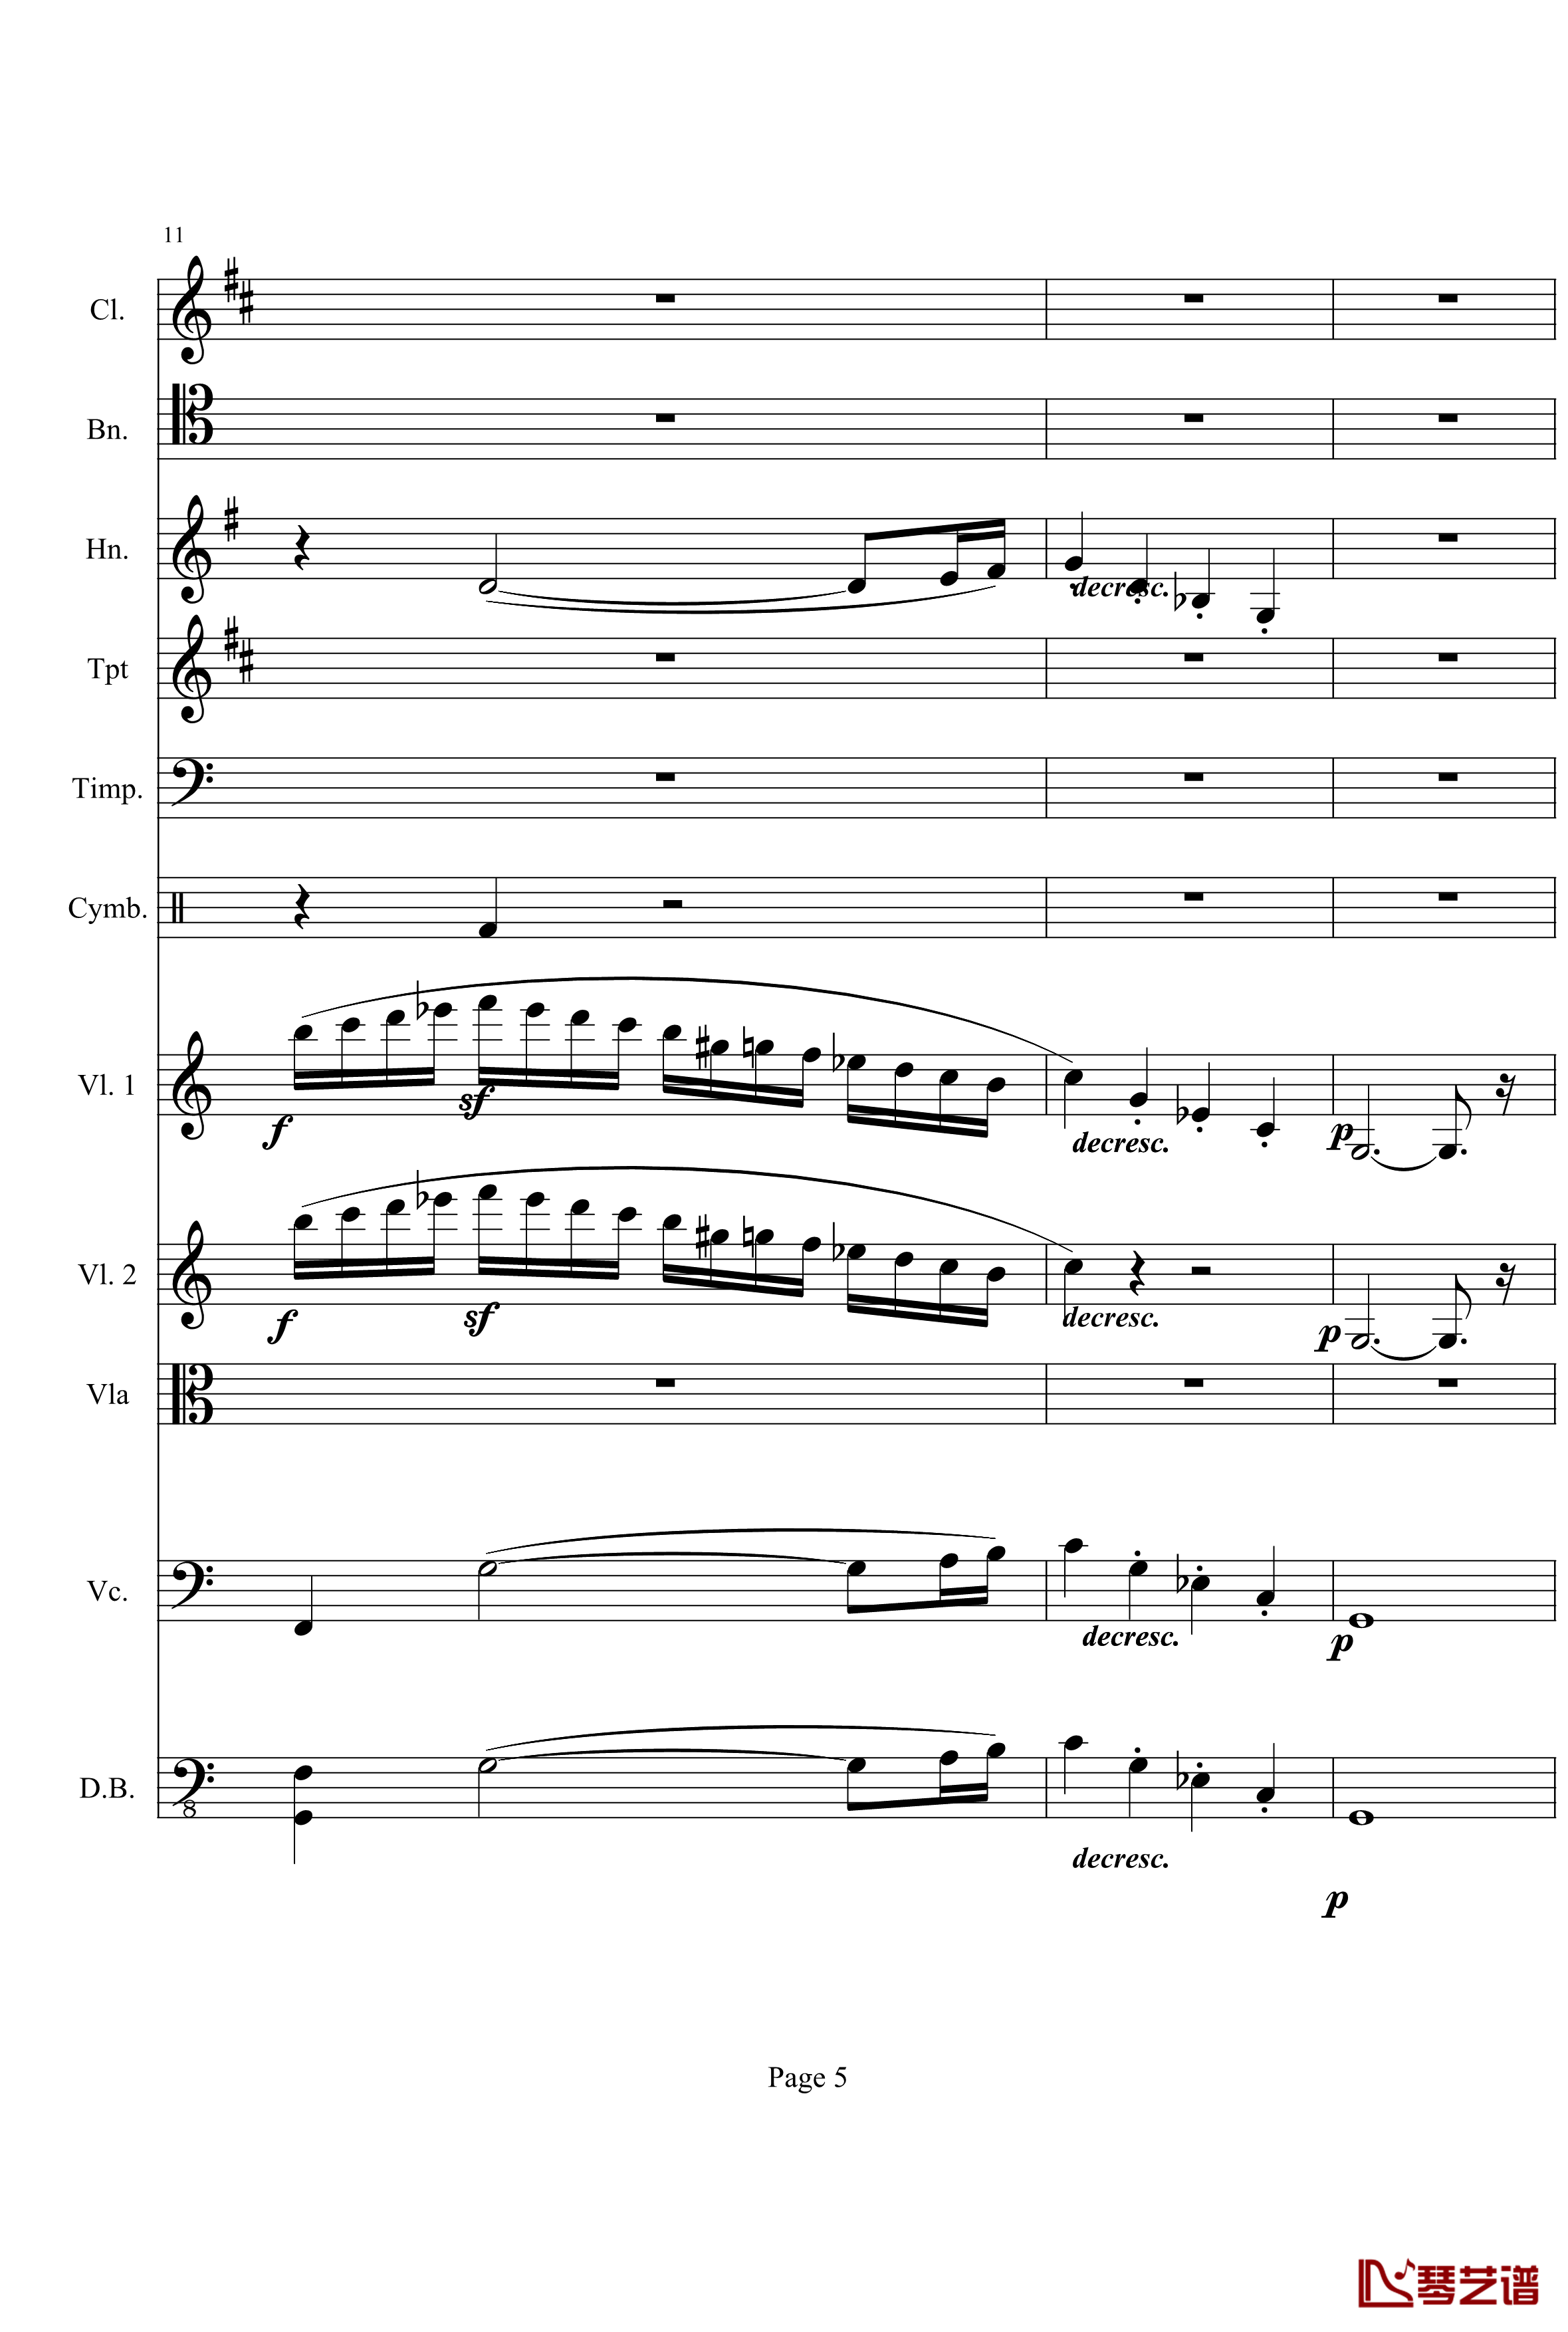 奏鸣曲之交响钢琴谱-第21首-Ⅰ-贝多芬-beethoven5